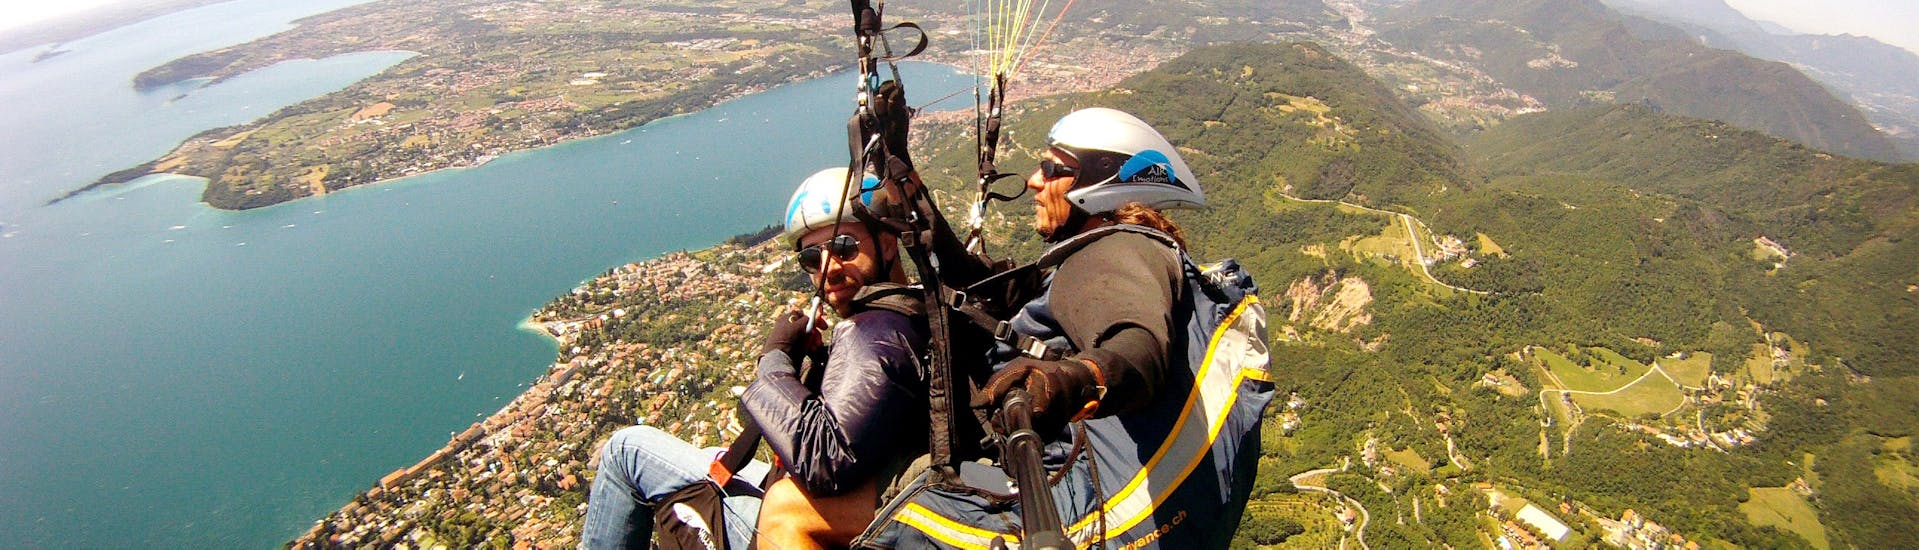 Vol en parapente panoramique à Bergamo (dès 6 ans) - Lake Lecco.